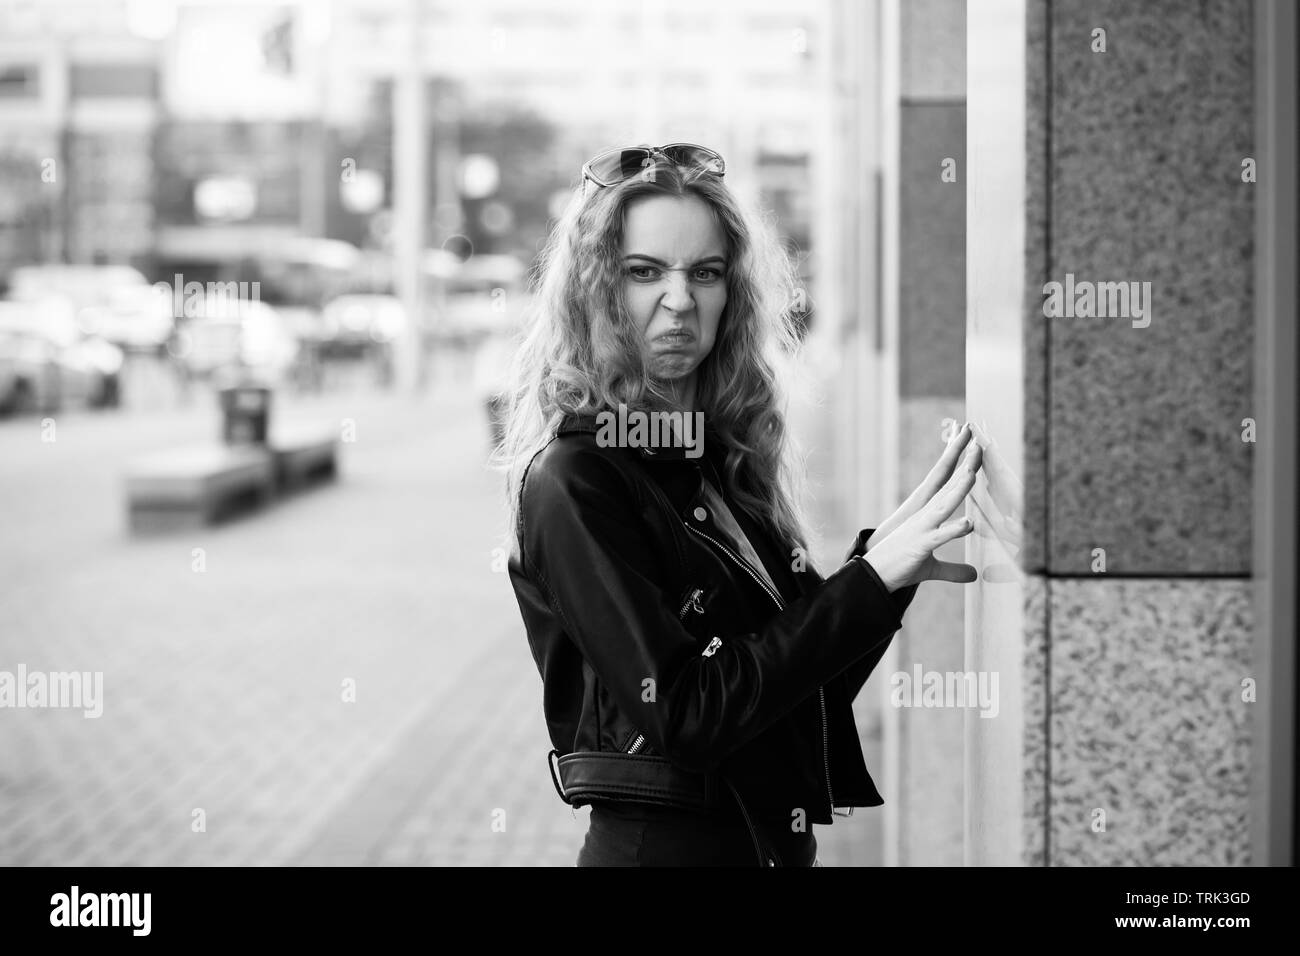 Fun grave triste femme blonde en manteau de cuir sur grimaçant rue looking at camera, monochrome Banque D'Images